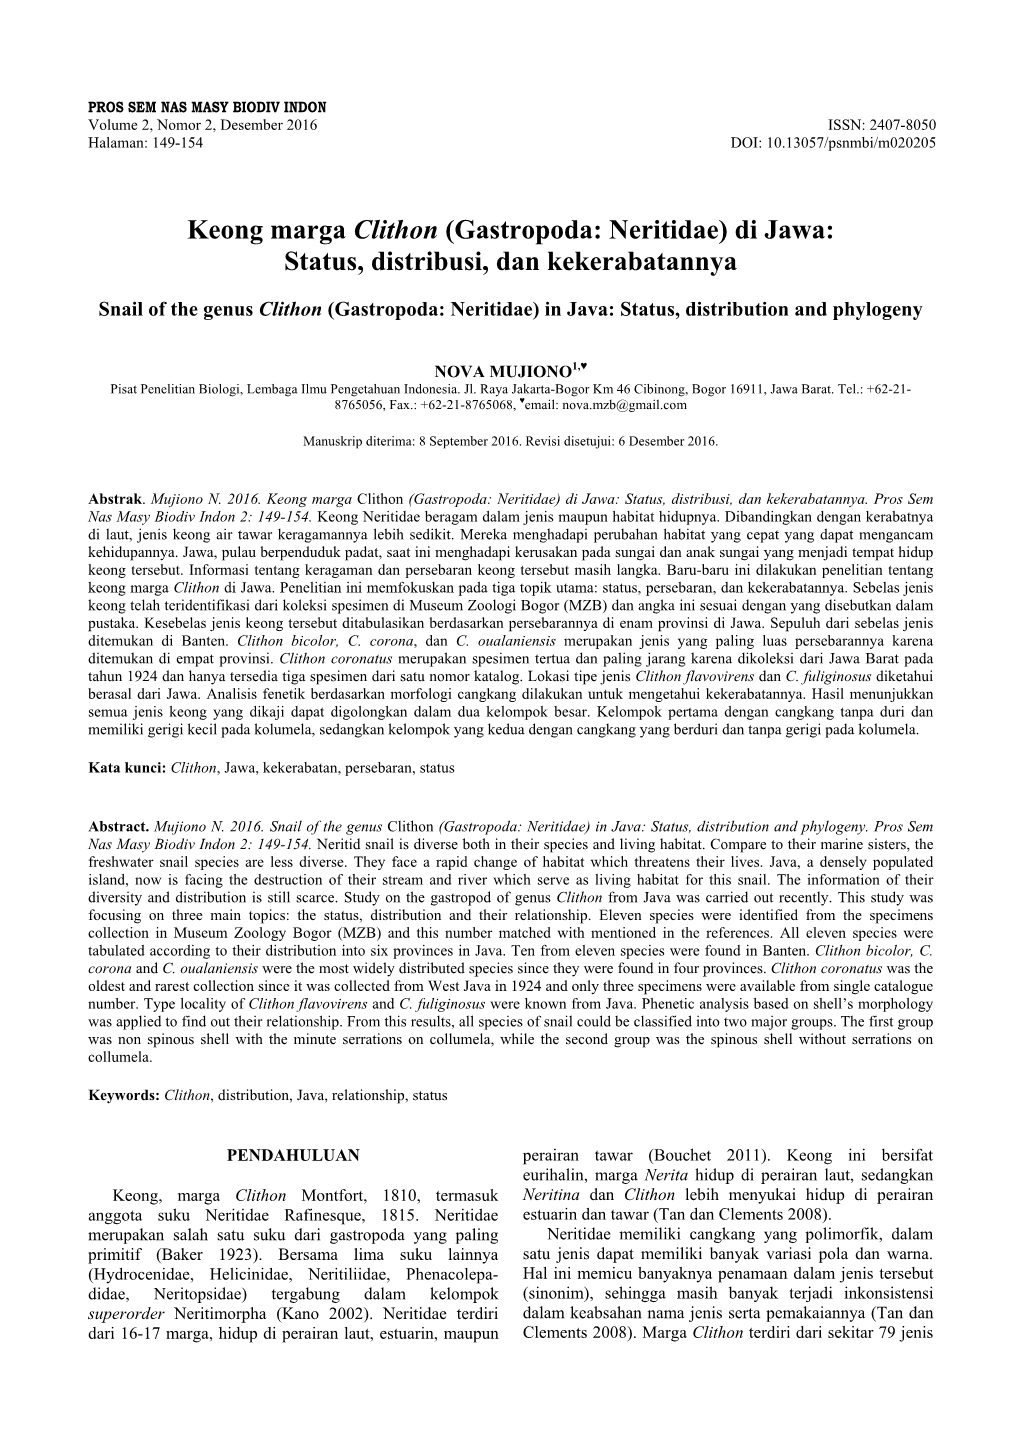 Keong Marga Clithon (Gastropoda: Neritidae) Di Jawa: Status, Distribusi, Dan Kekerabatannya